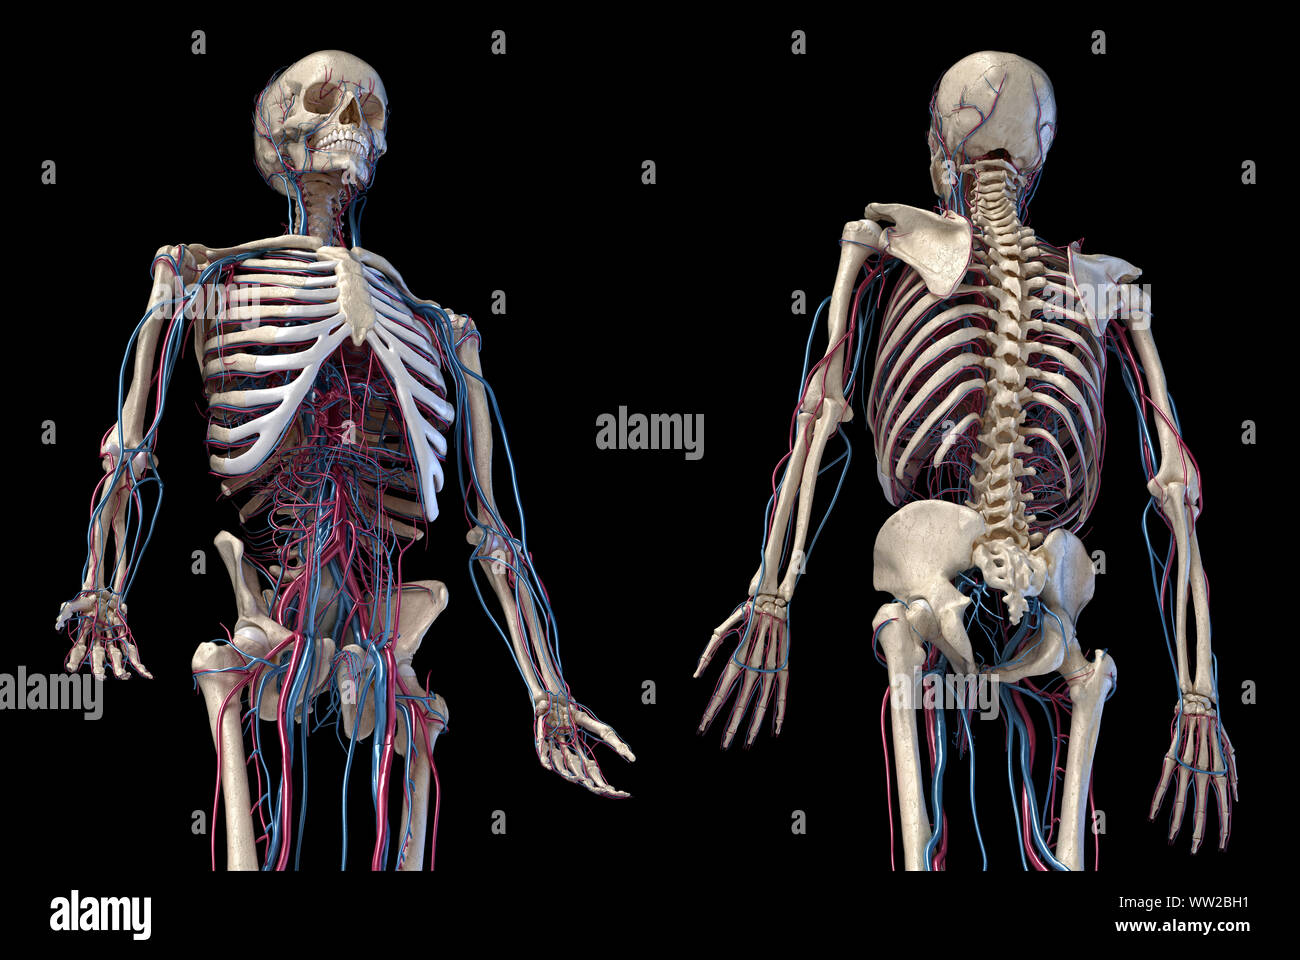 Der menschlichen Anatomie, 3D-Darstellung der Skelett mit Herz-Kreislauf-System. Perspektivische Ansicht von 3/4 oberen Teil, Vorder- und Rückseite. Auf schwarz backgrou Stockfoto